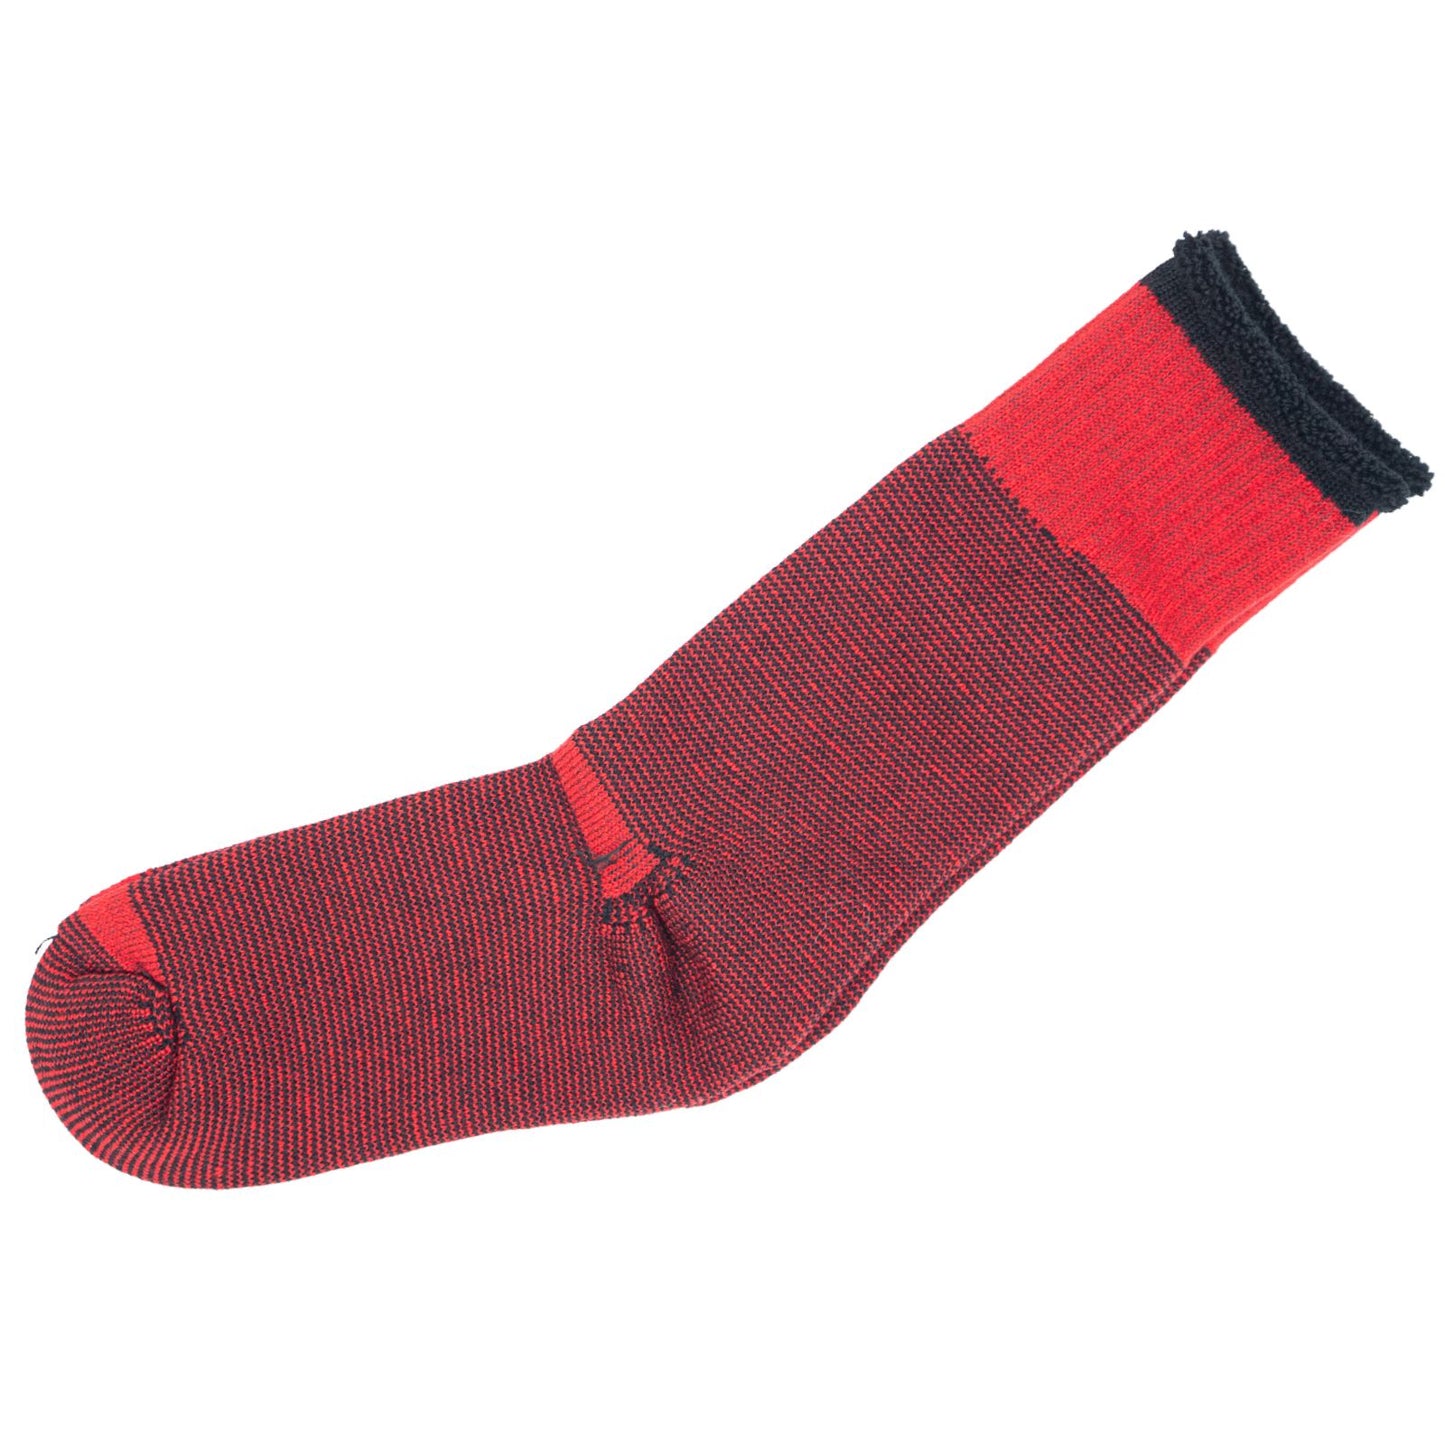 New Ladies 12 Pairs Merino Wool Socks Hiking Home Double Thickness